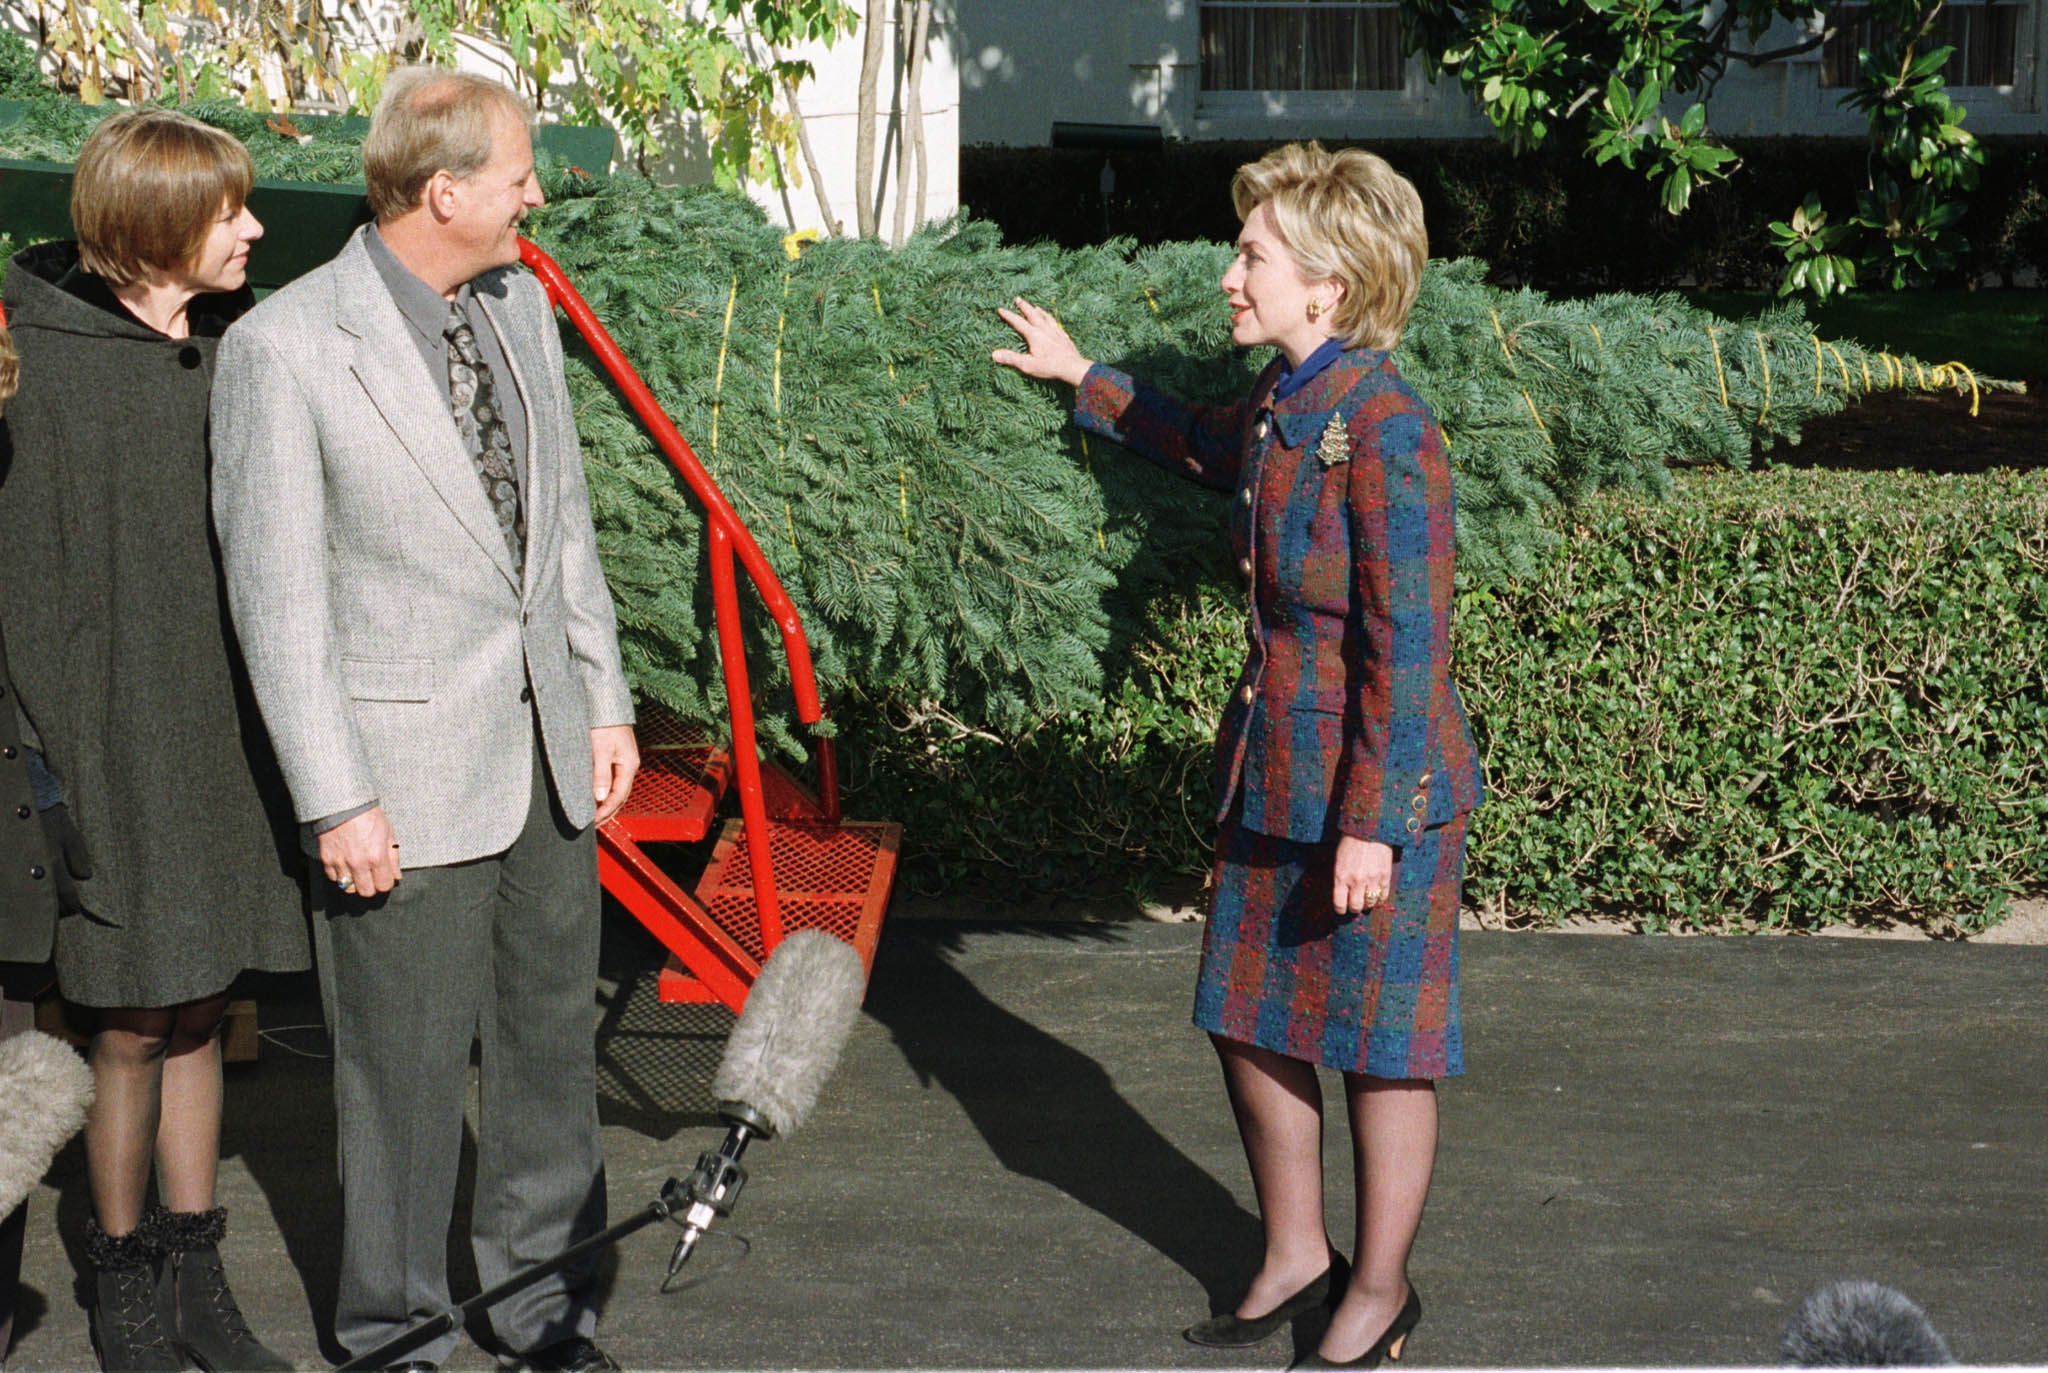 1999: Traditionell wird auch immer die Ankunft des offiziellen Weihnachtsbaums für das Weiße Haus von der Presse verfolgt - 1999 nahm Hillary Clinton den Baum im karierten Kostüm in Empfang.